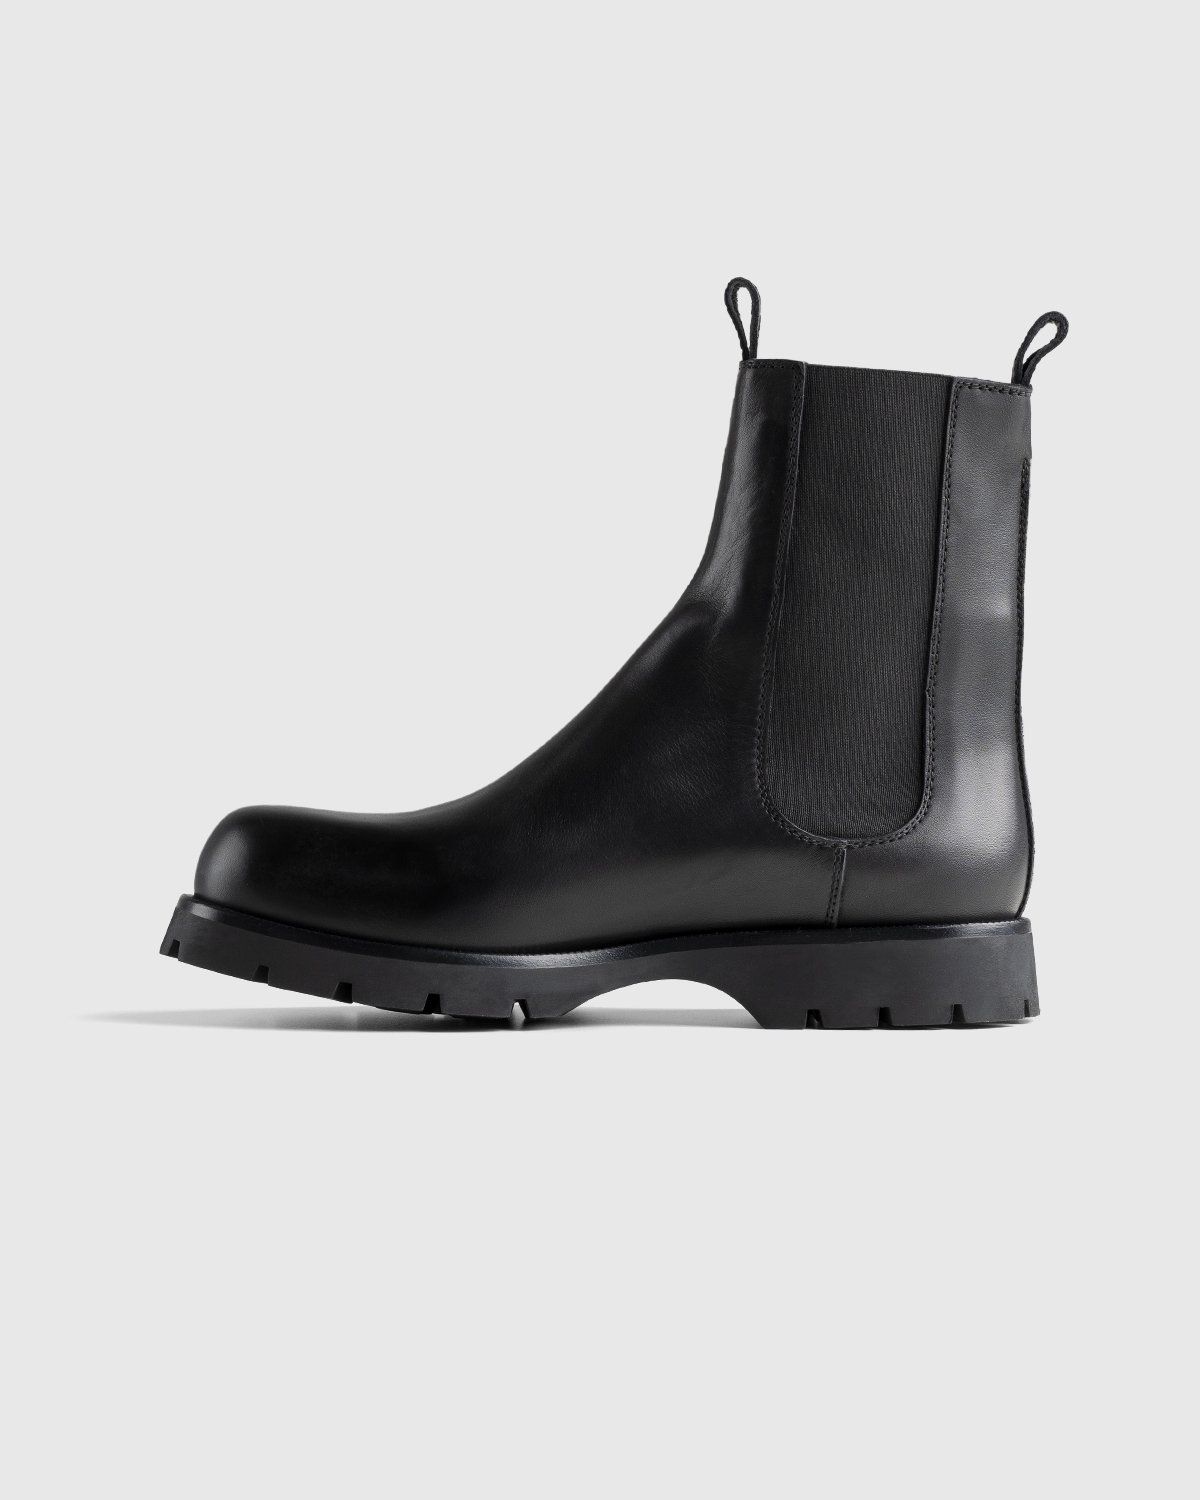 Jil Sander – Chelsea Boots Black - Image 2